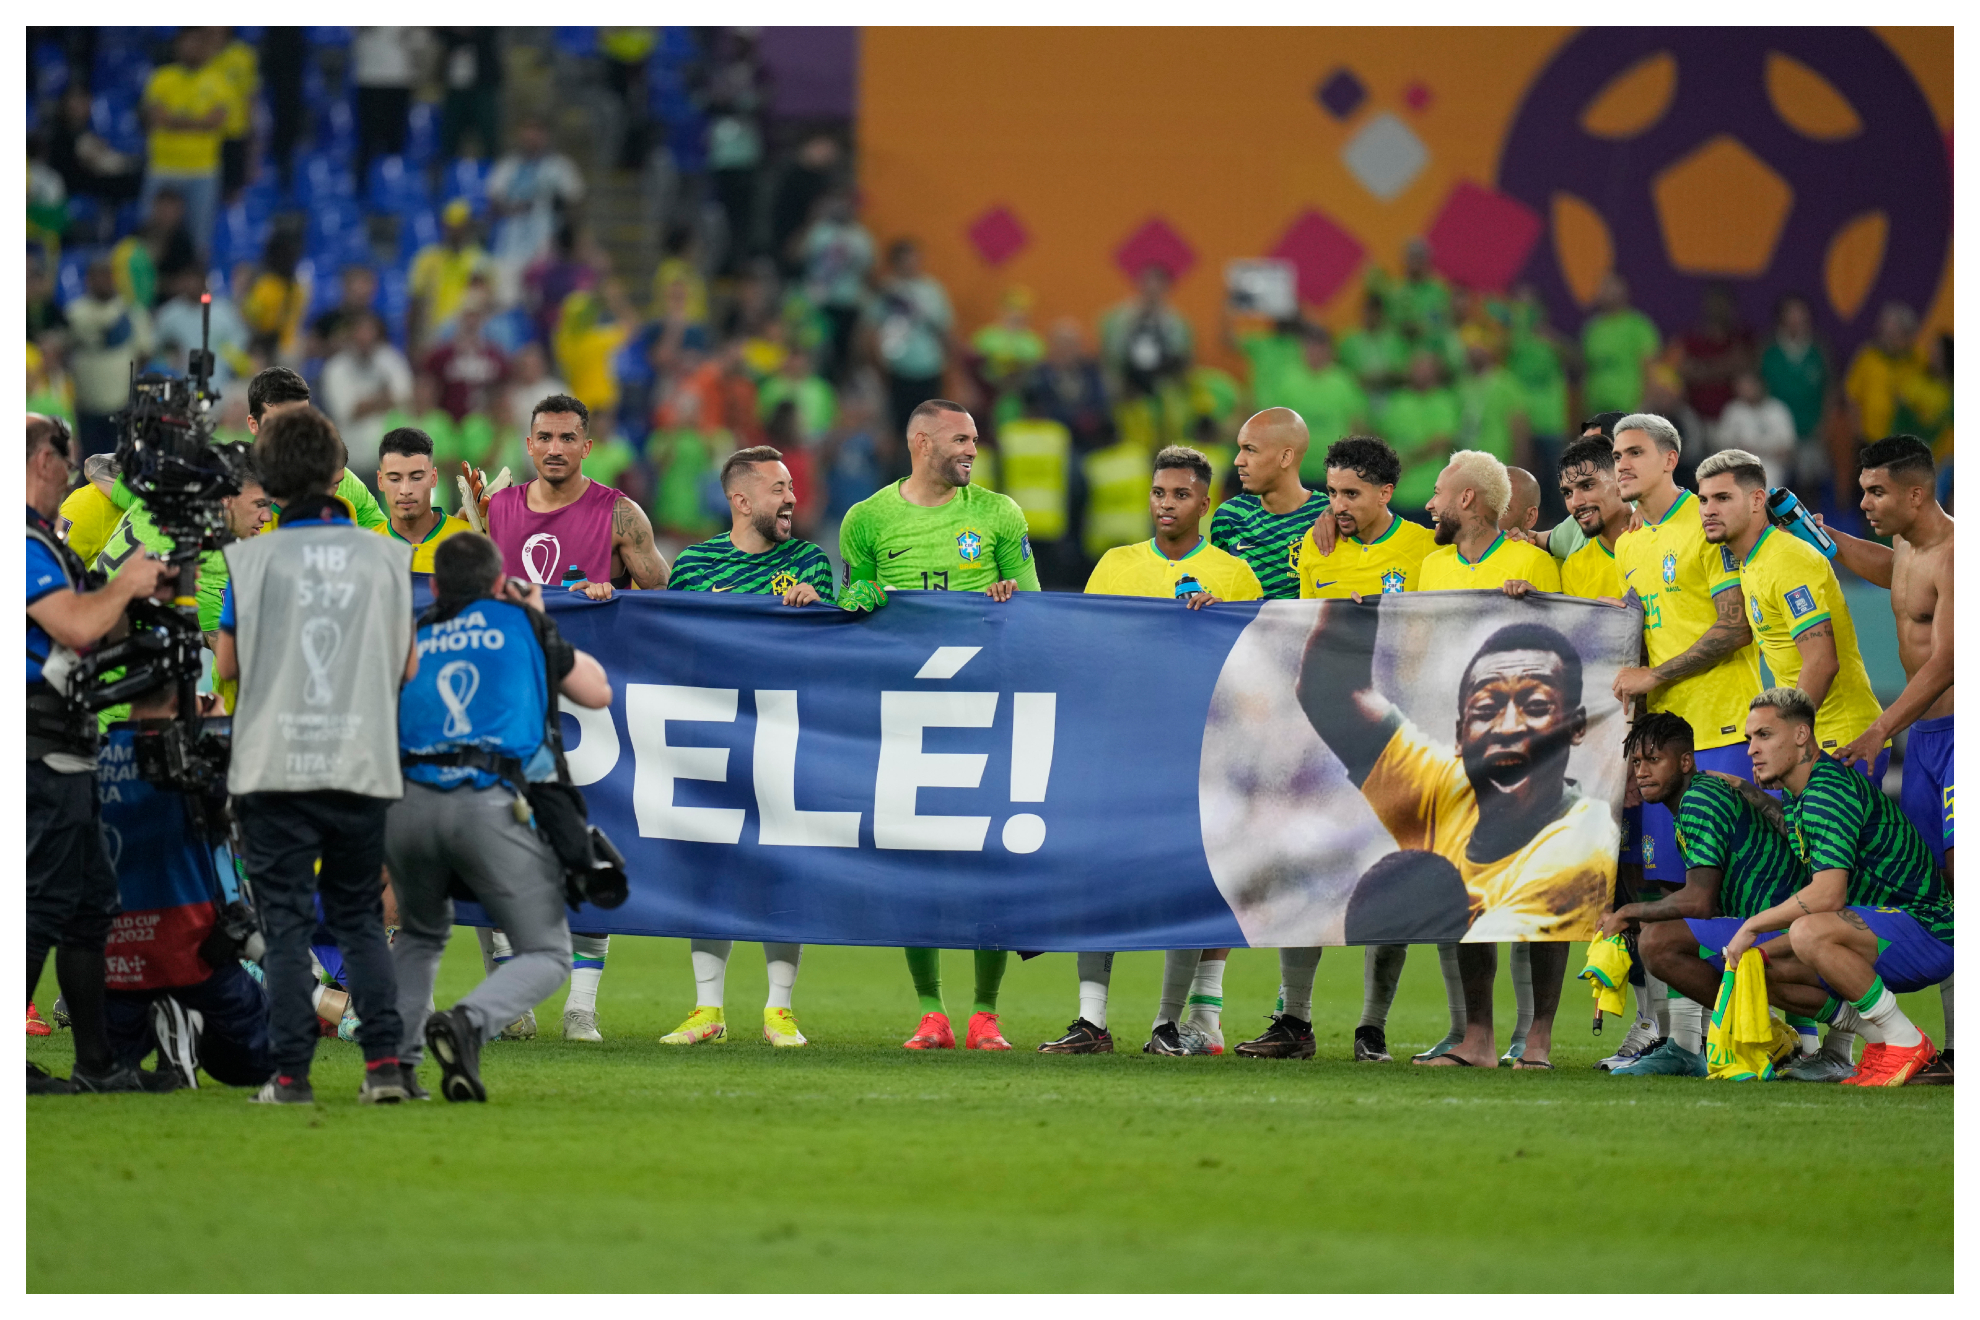 Los jugadores mostraron esta pancarta de apoyo a Pelé al final del choque.